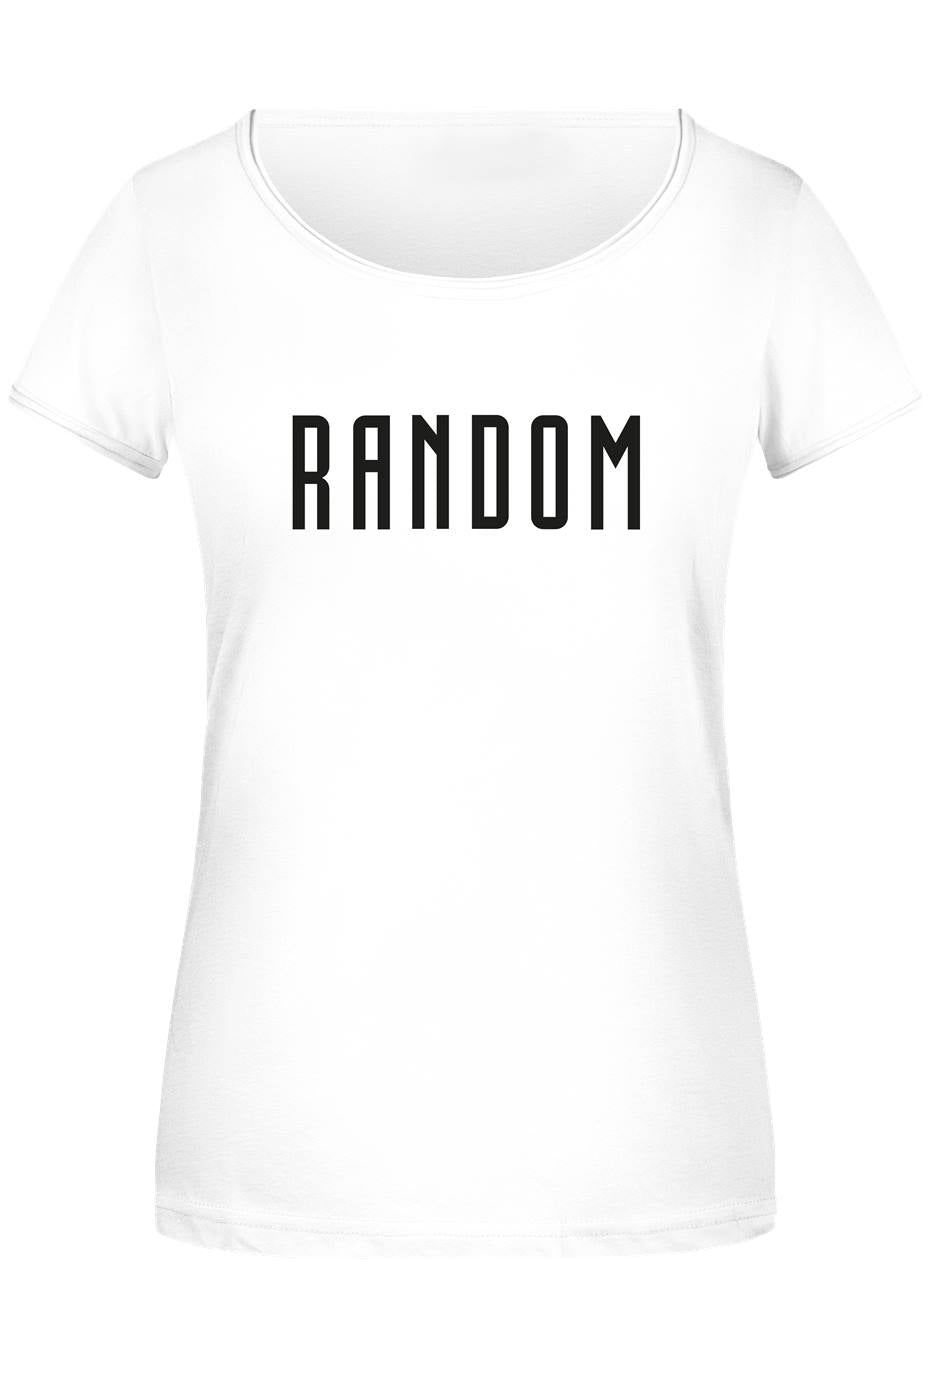 T-Shirt Damen - Random